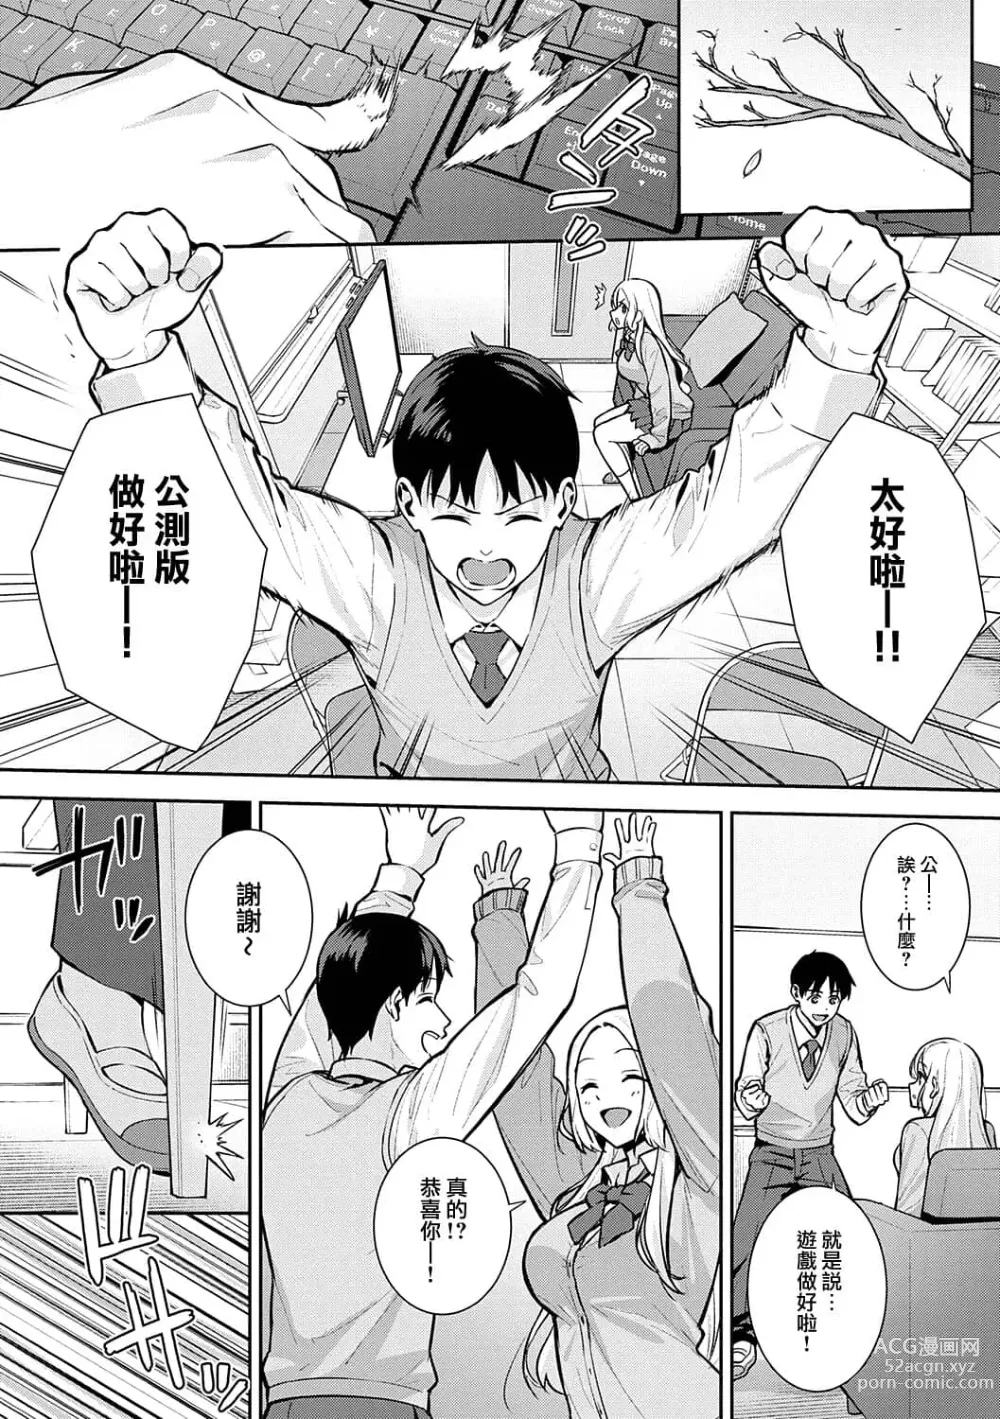 Page 27 of manga Honki ni Shichatte, Ii desu yo. + Digital Tokusouban Gentei Tokuten Kara Kano! FD